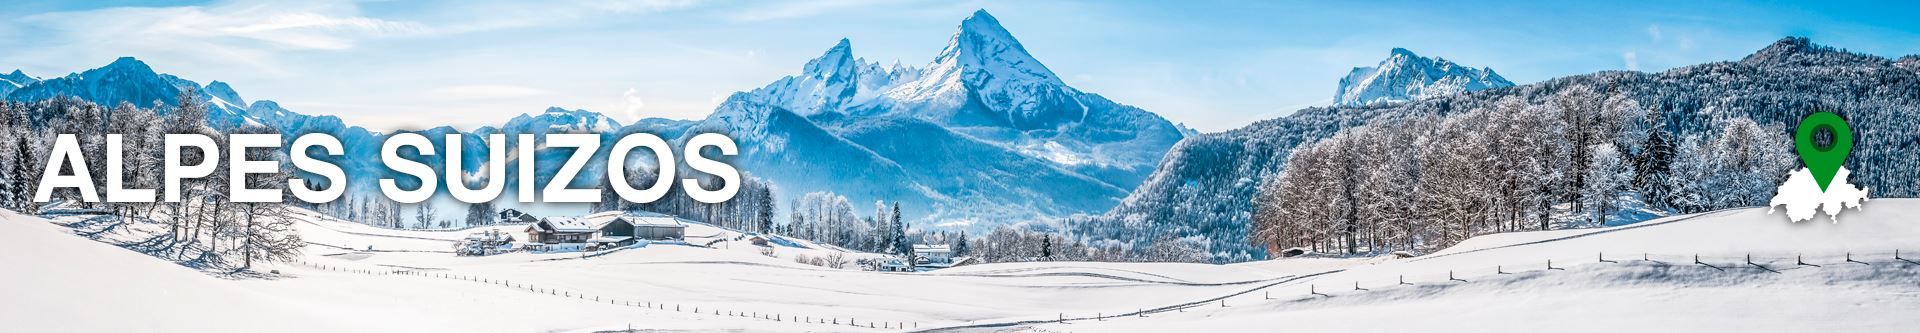 Hoteles en los Alpes Suizos - No pagues más por lo mismo